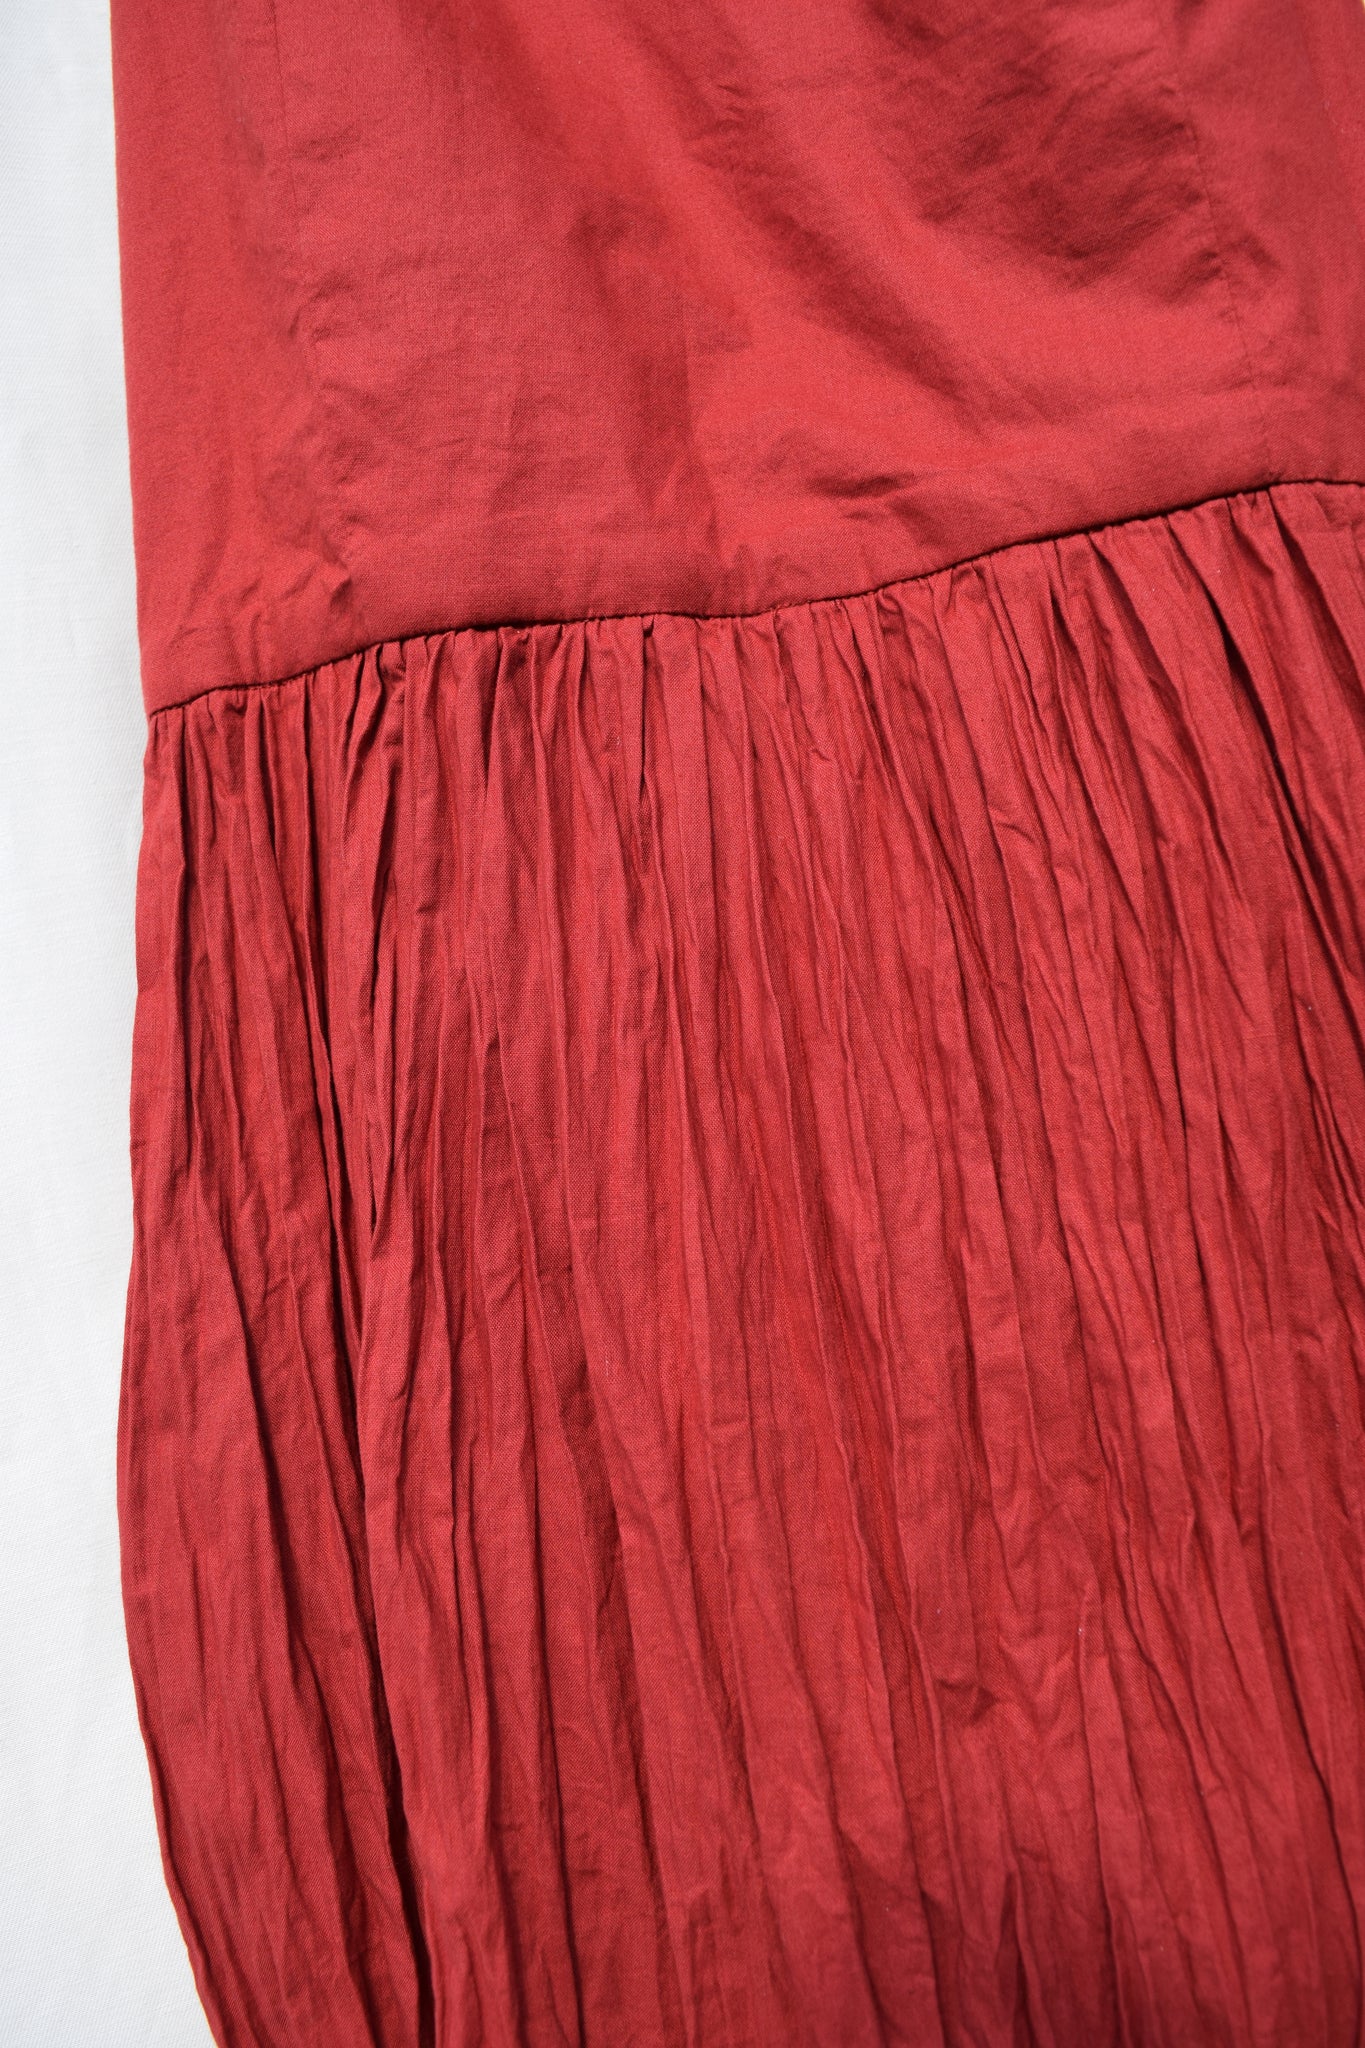 Crinkling The Skirt On The Rose City Halter Dress – Sew House Seven